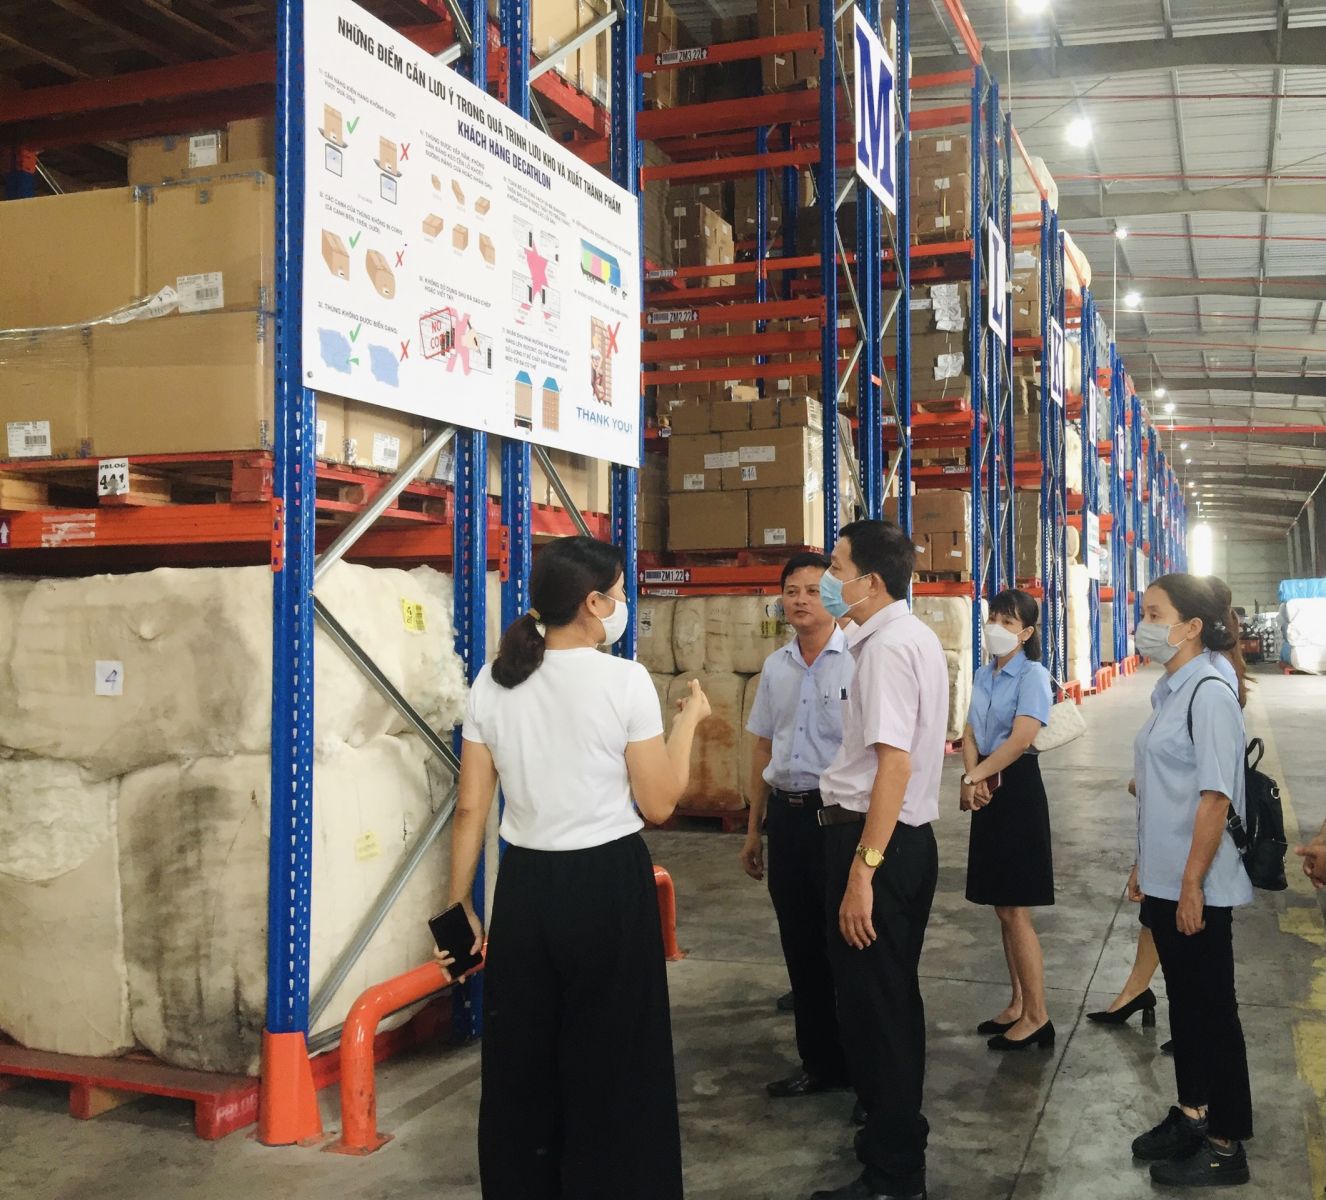 Phó Bí thư Thị ủy, Chủ tịch UBND Thị xã Hương Trà Hà Văn Tuấn đến thăm, khảo sát chuỗi dịch vụ Logistics tại Khu công nghiệp Phú Bài